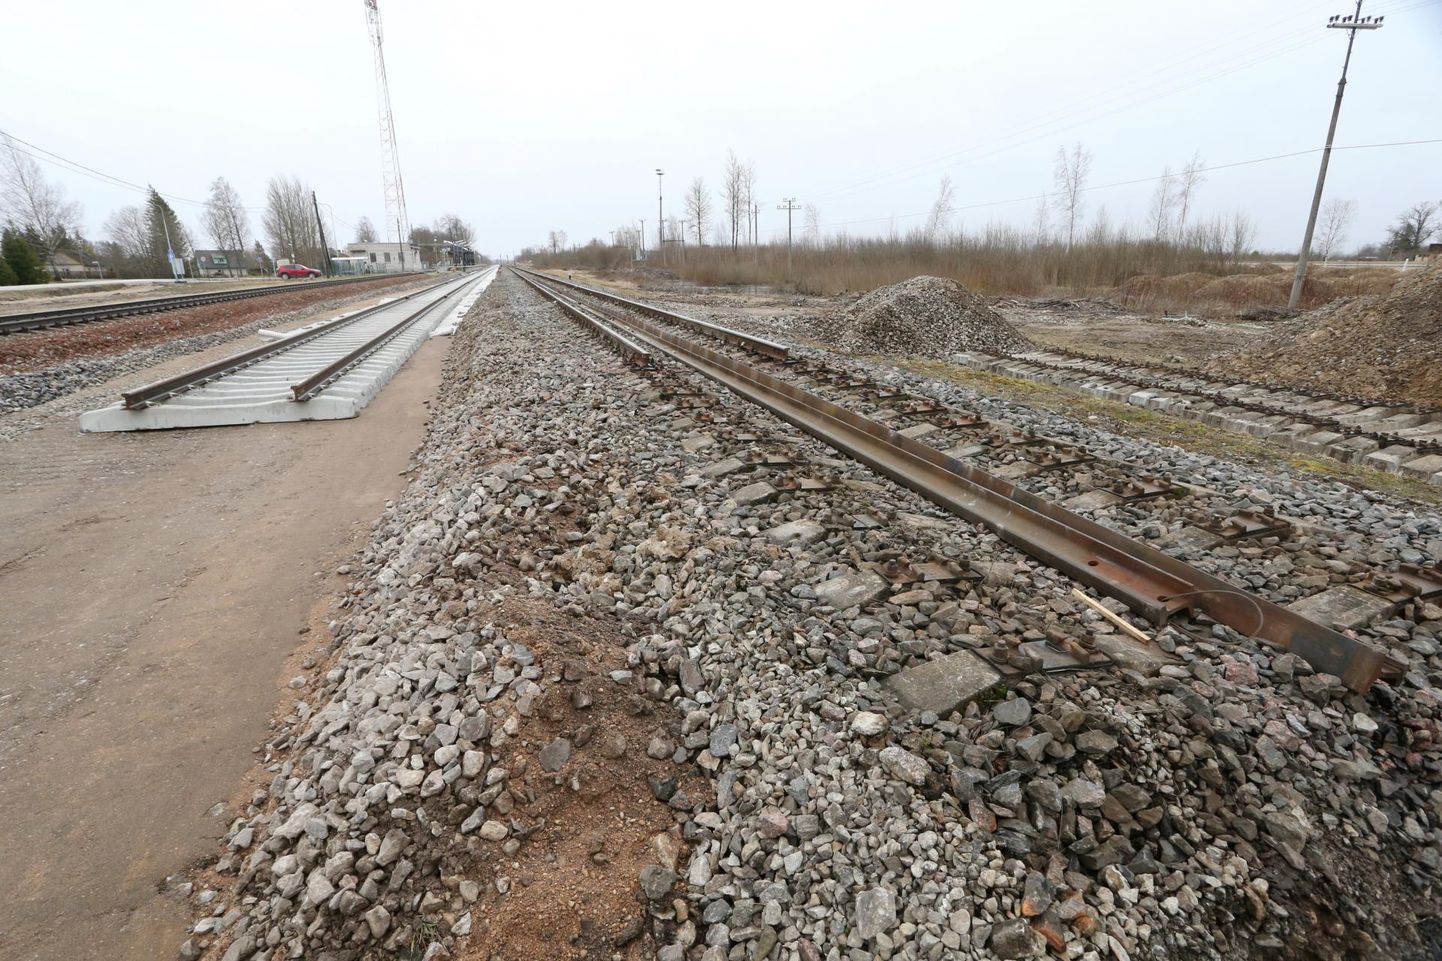 Osa raudtee remonditöid on Tabivere jaama lähistel juba tehtud. Nüüd algab juuni lõpuni käiv remont Tabivere ja Kärkna vahel.